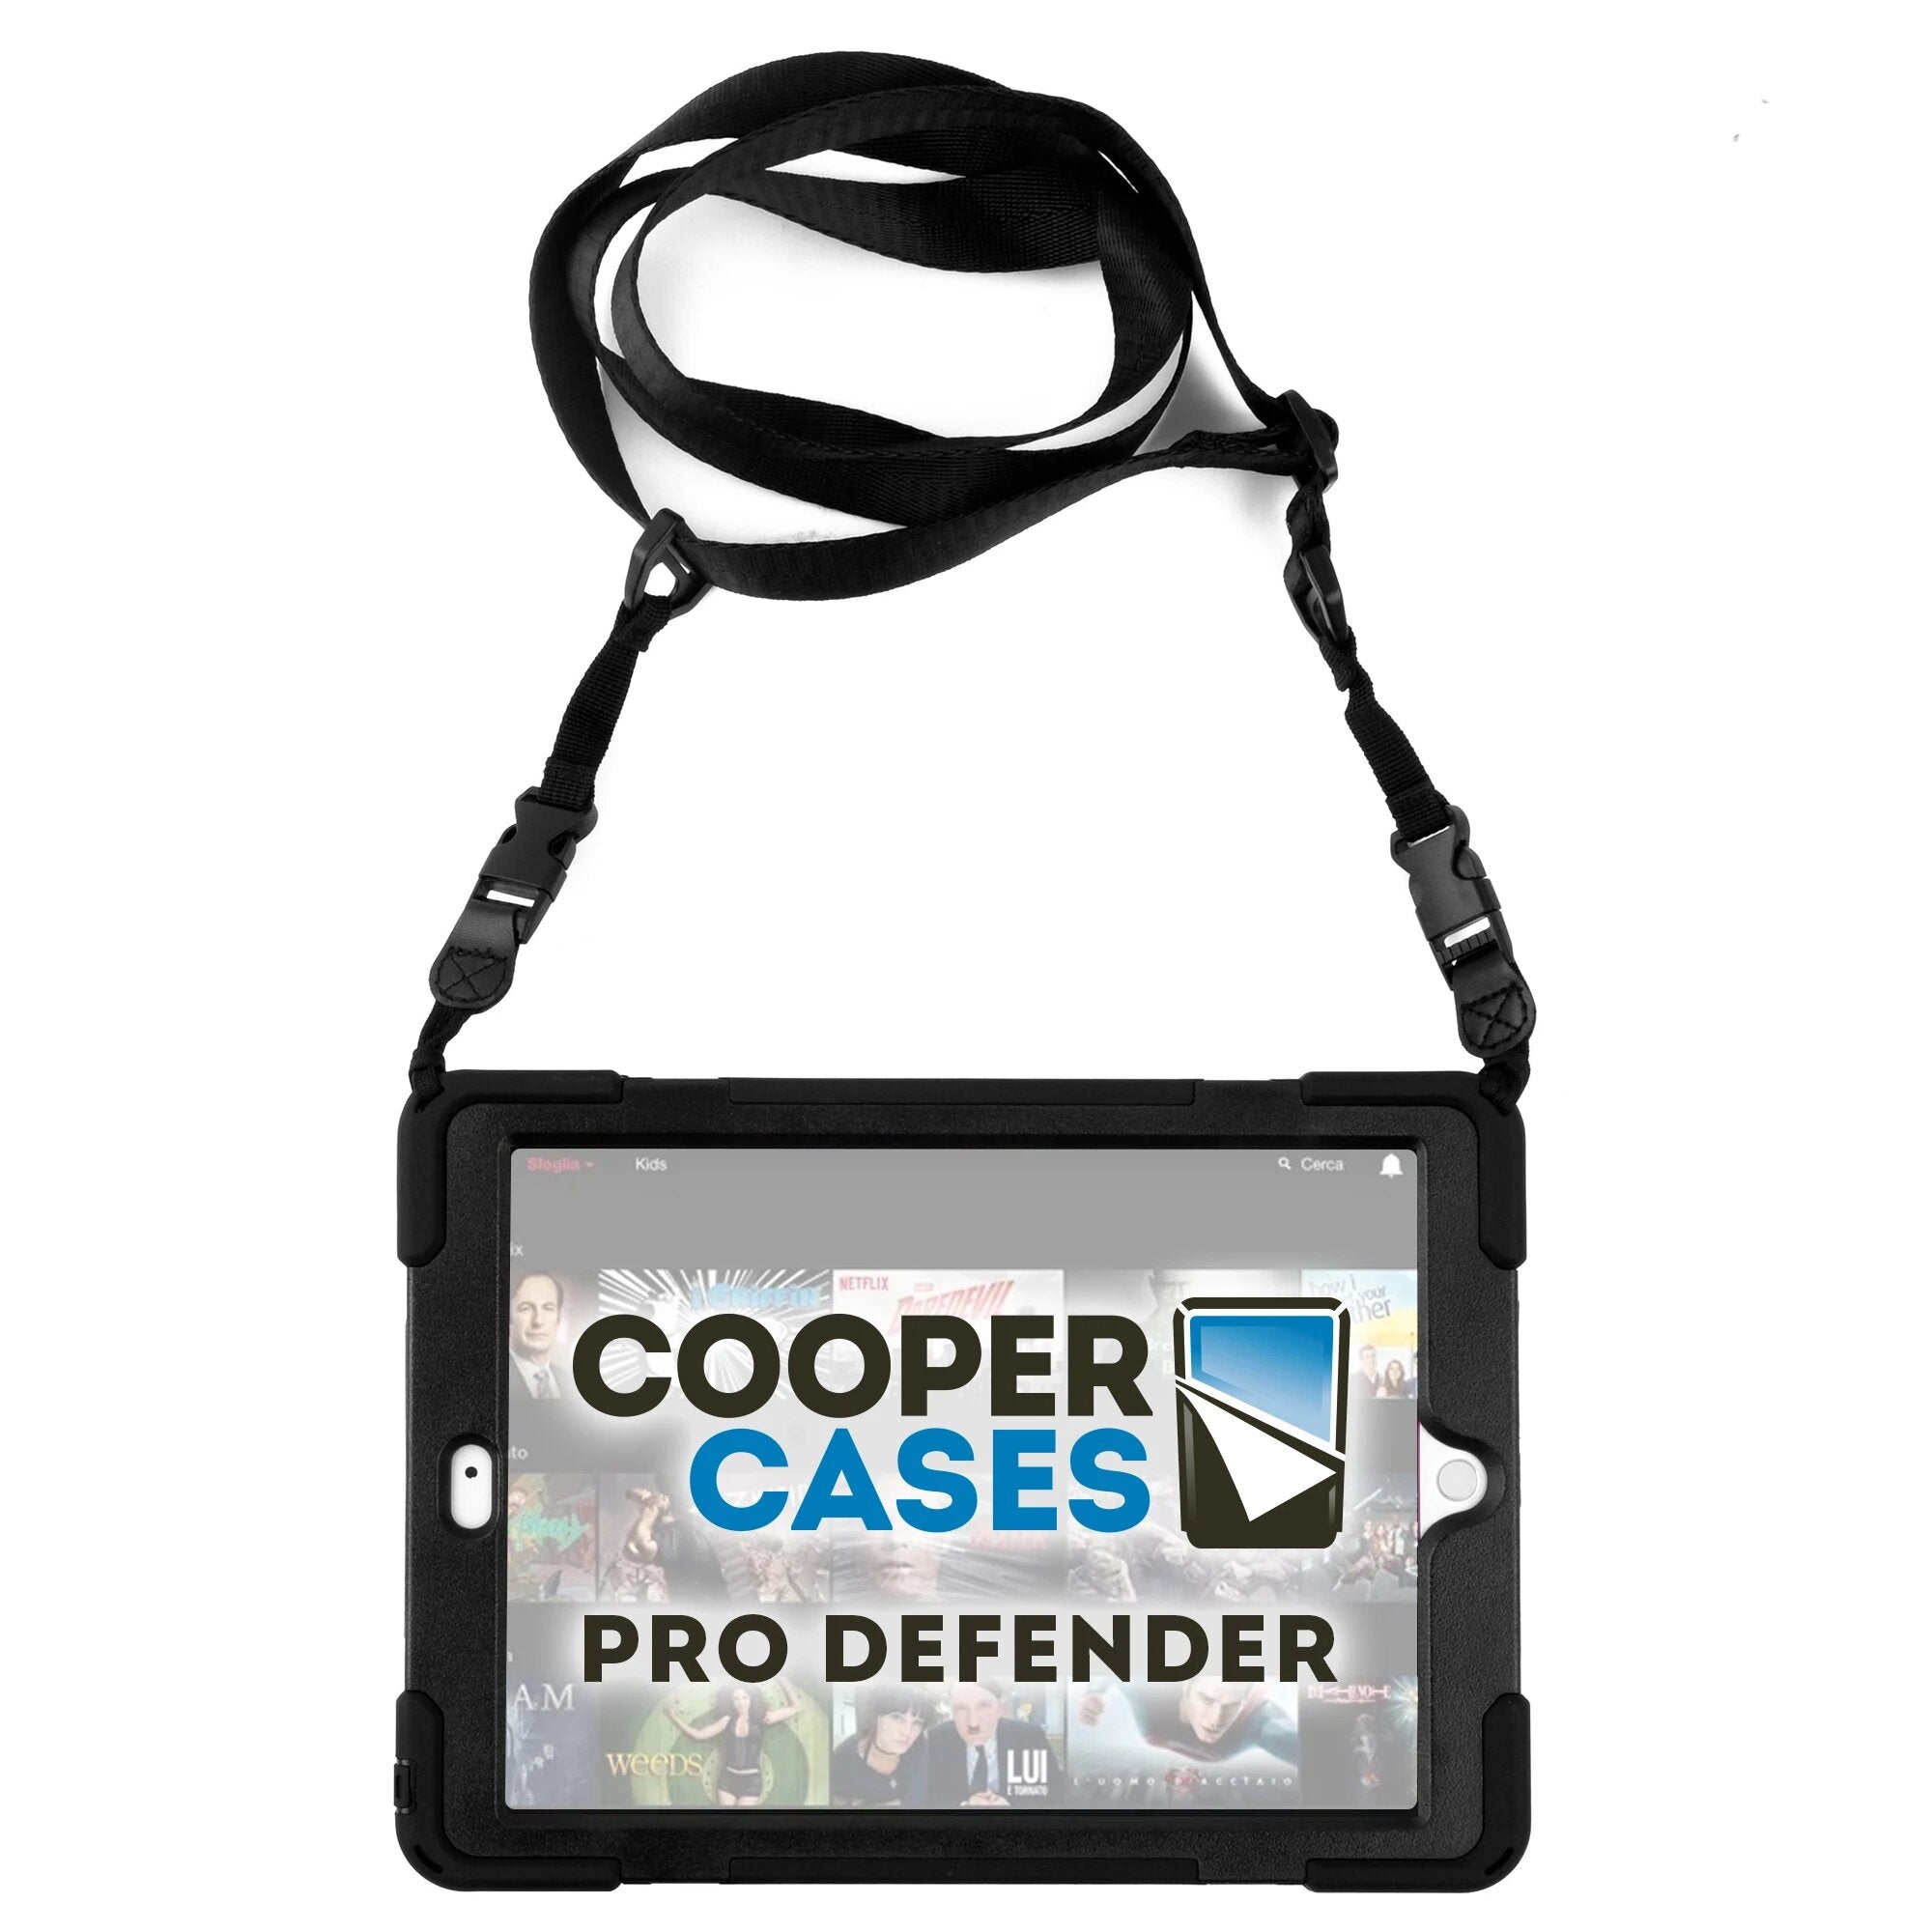 NEW] Cooper Pro Defender Tough Case w/ Shoulder Strap, Hand Strap